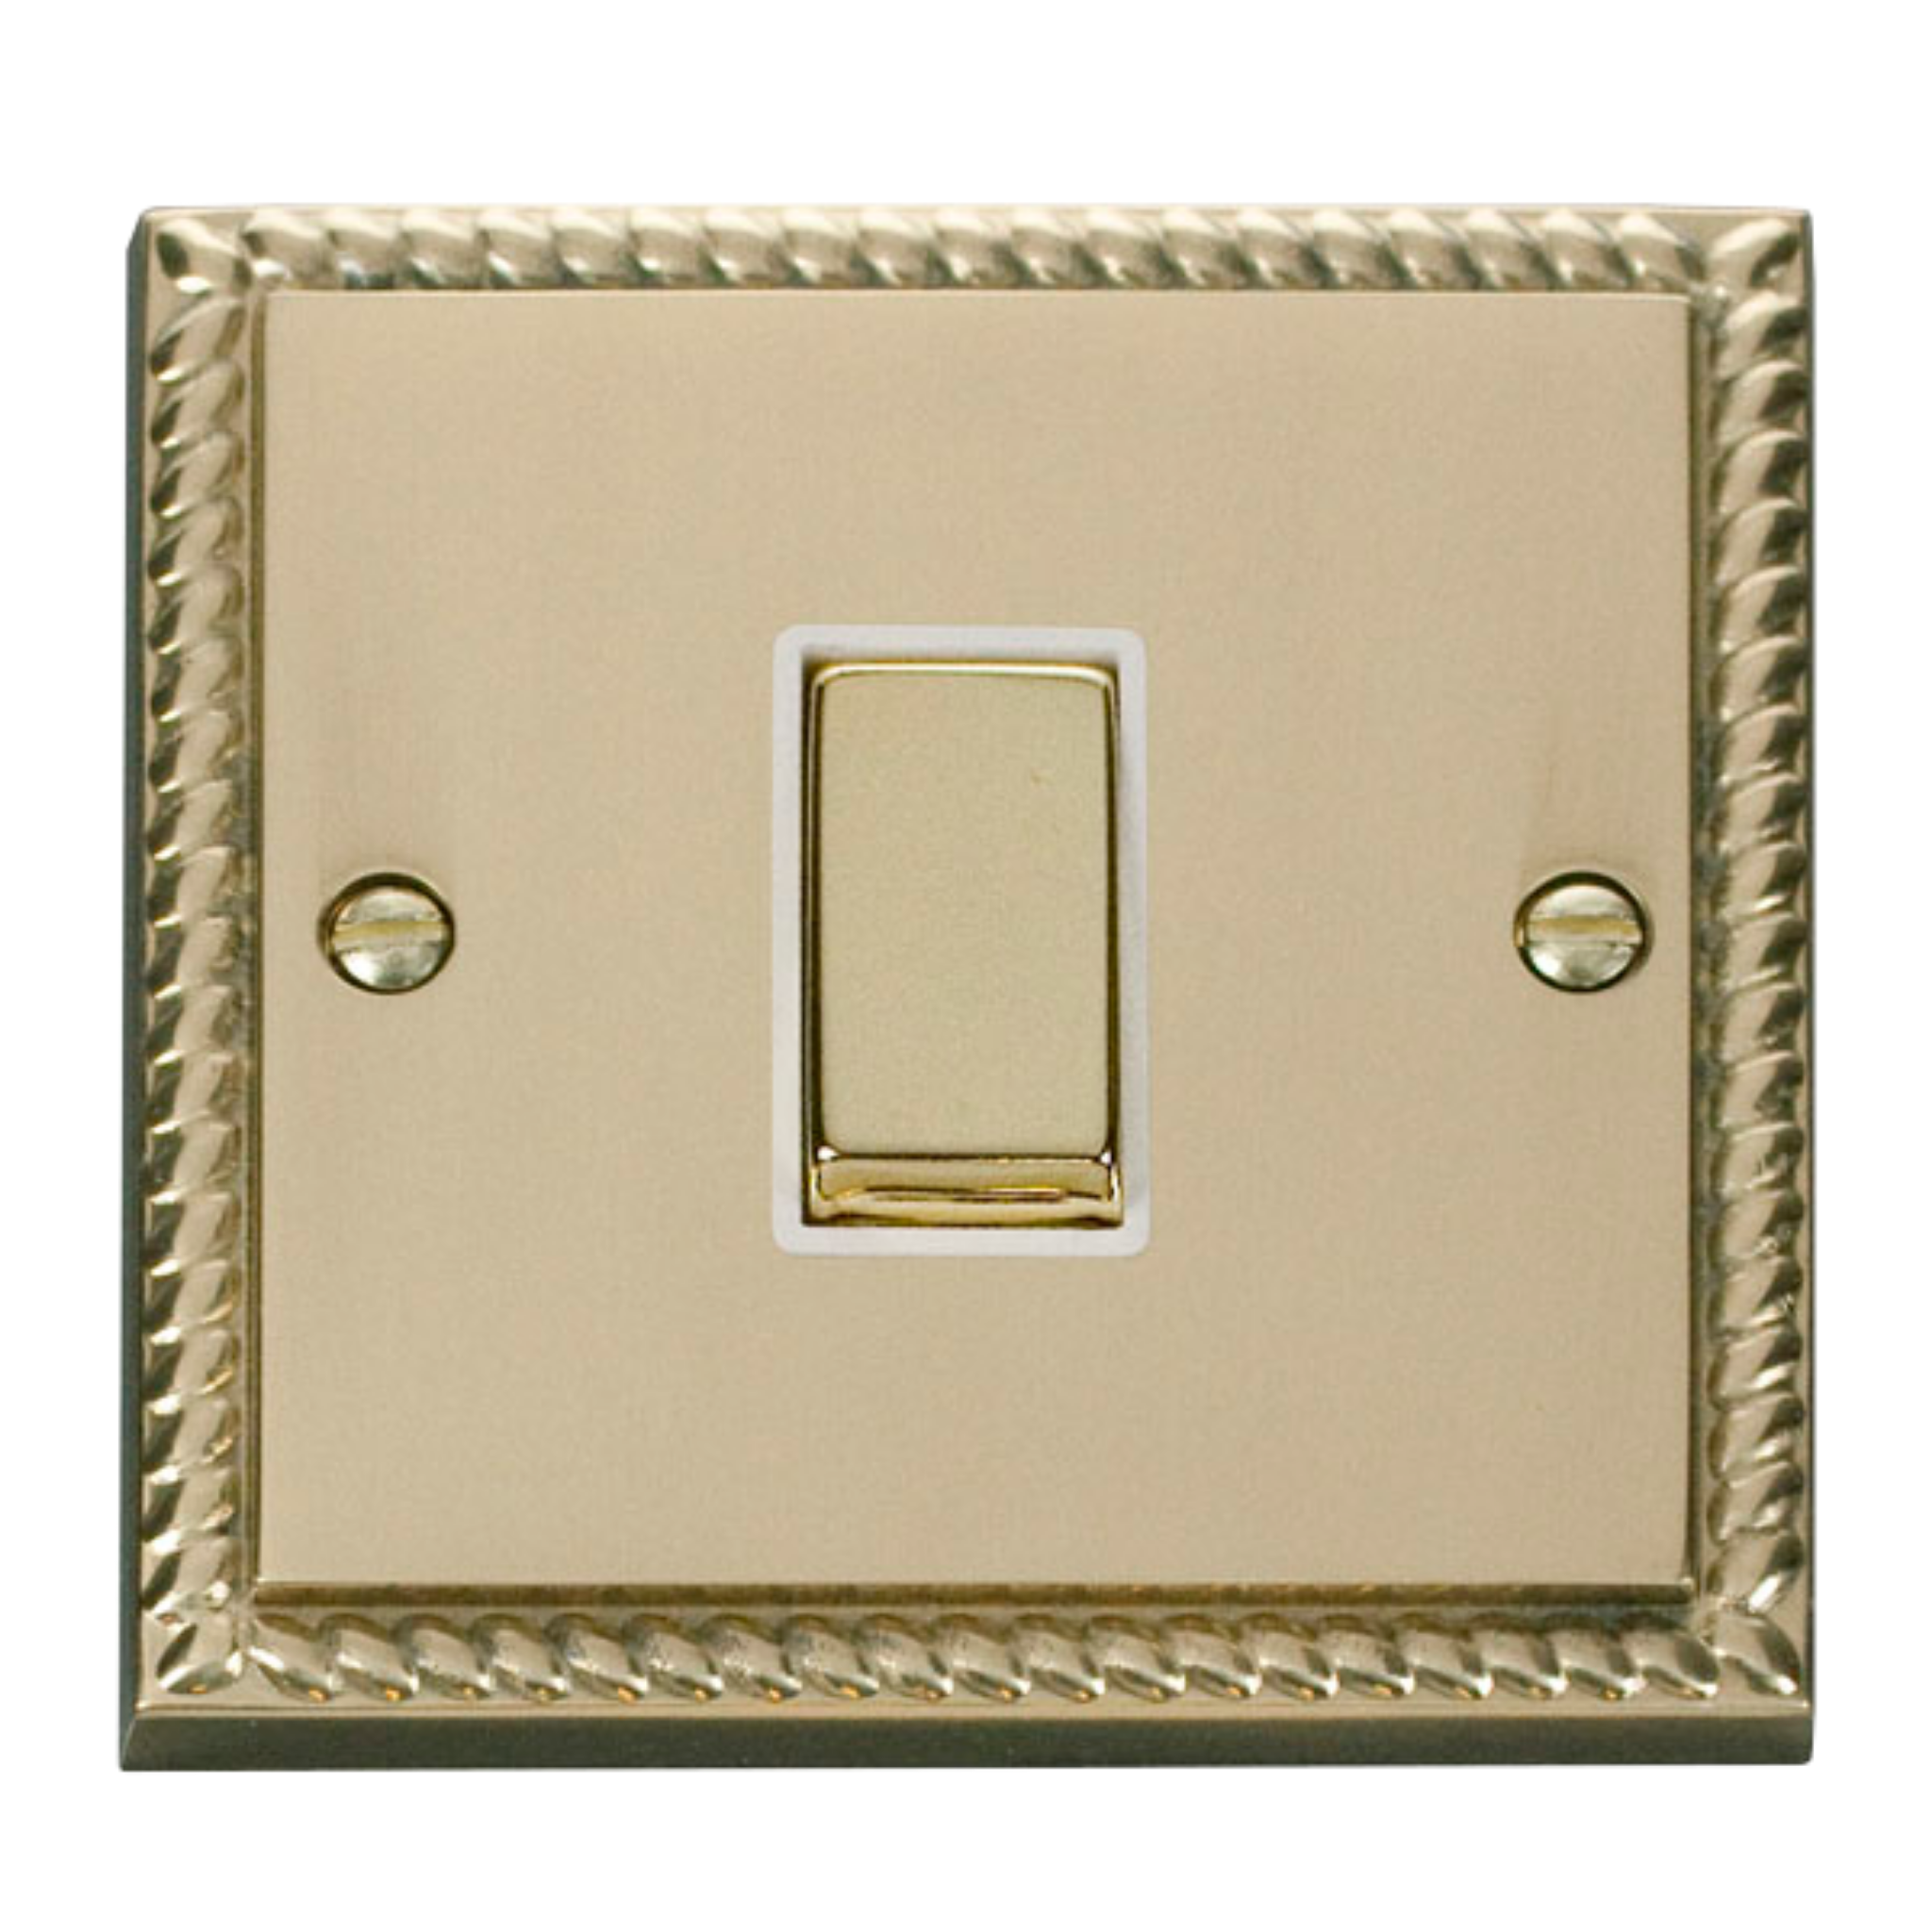 Z-Wave Smart Dimmer Switch in Georgian Brass